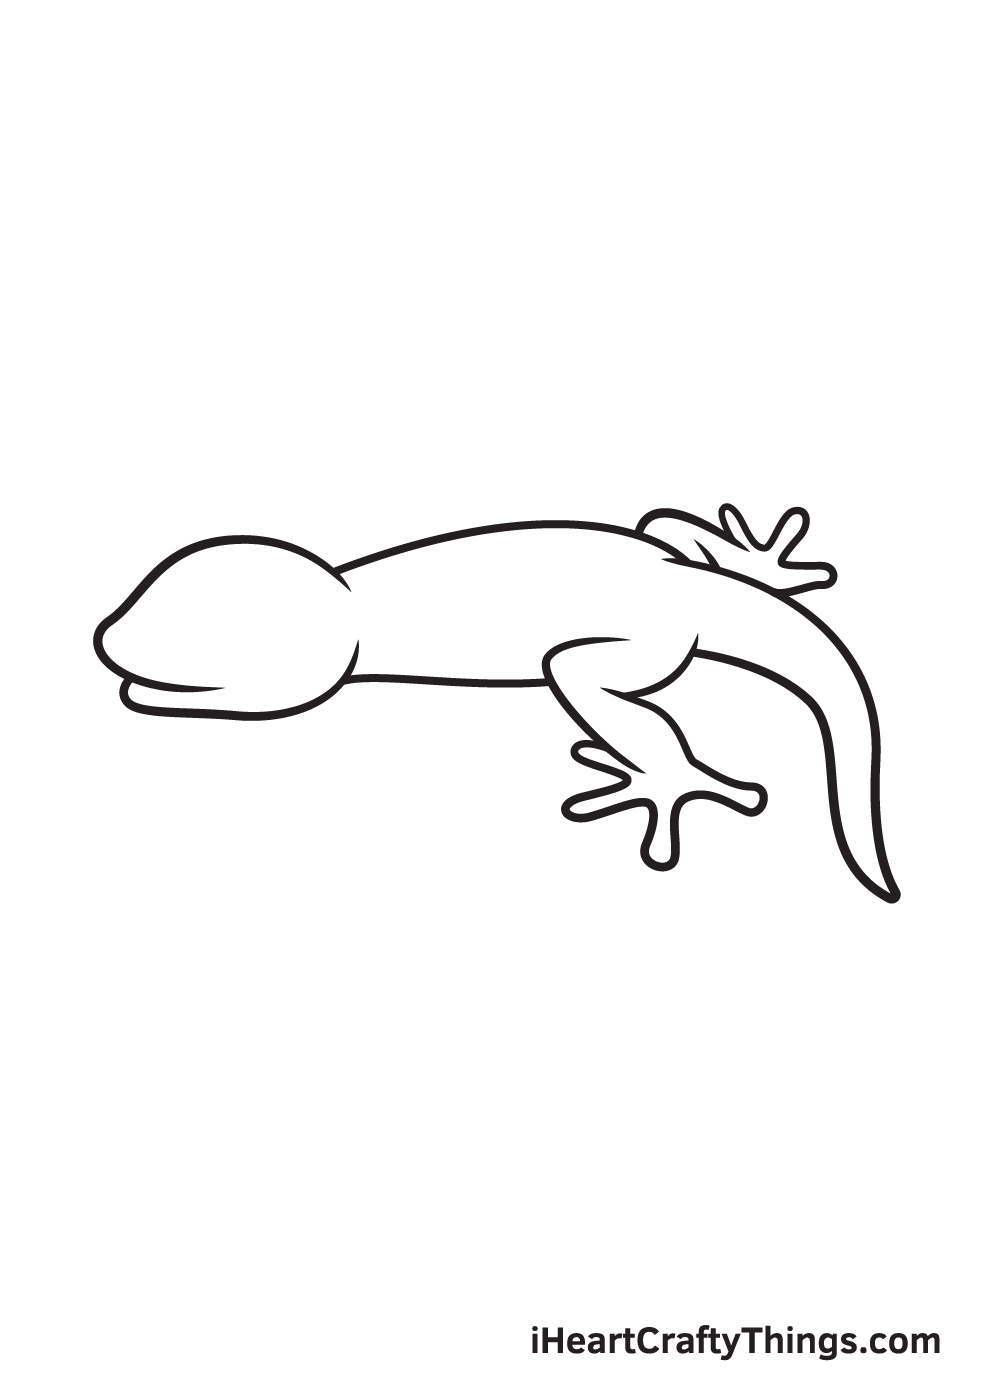 Lizard DRAWING – STEP 6 - Hướng dẫn cách vẽ con thằn lằn đơn giản với 9 bước cơ bản